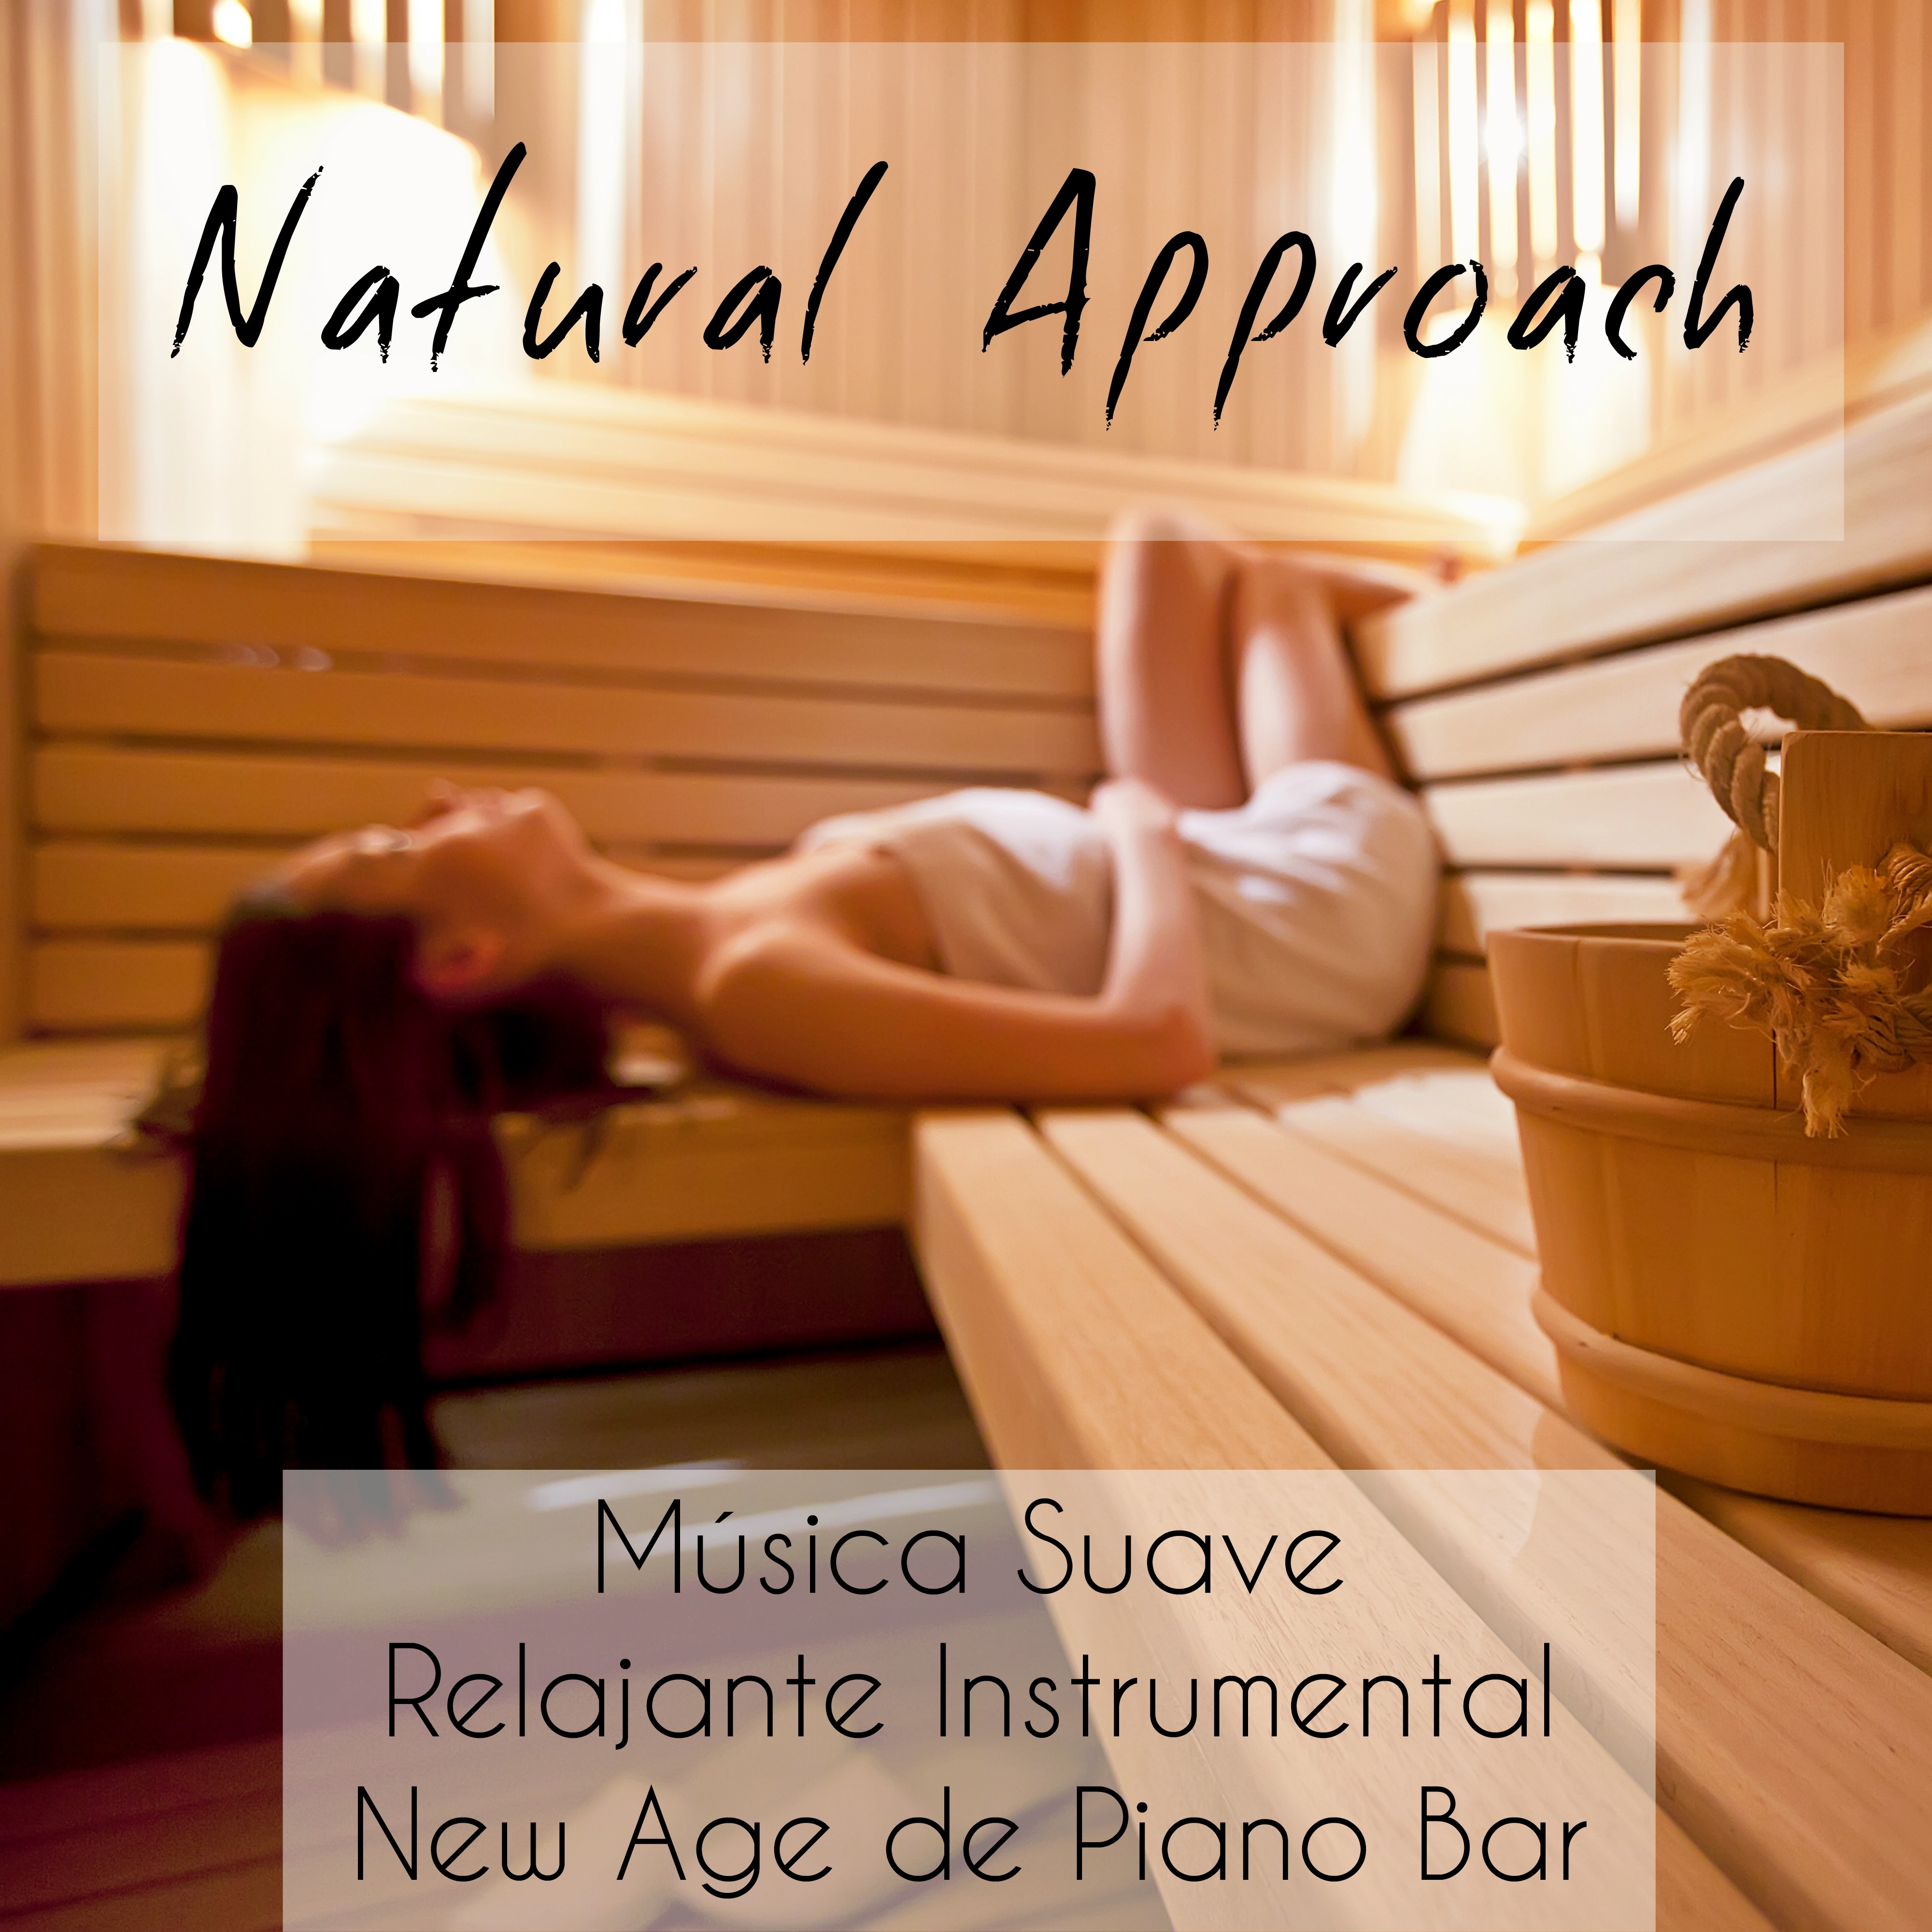 Natural Approach  Mu sica Suave Relajante Instrumental New Age de Piano Bar para Meditacio n Guiada e Relax Spa